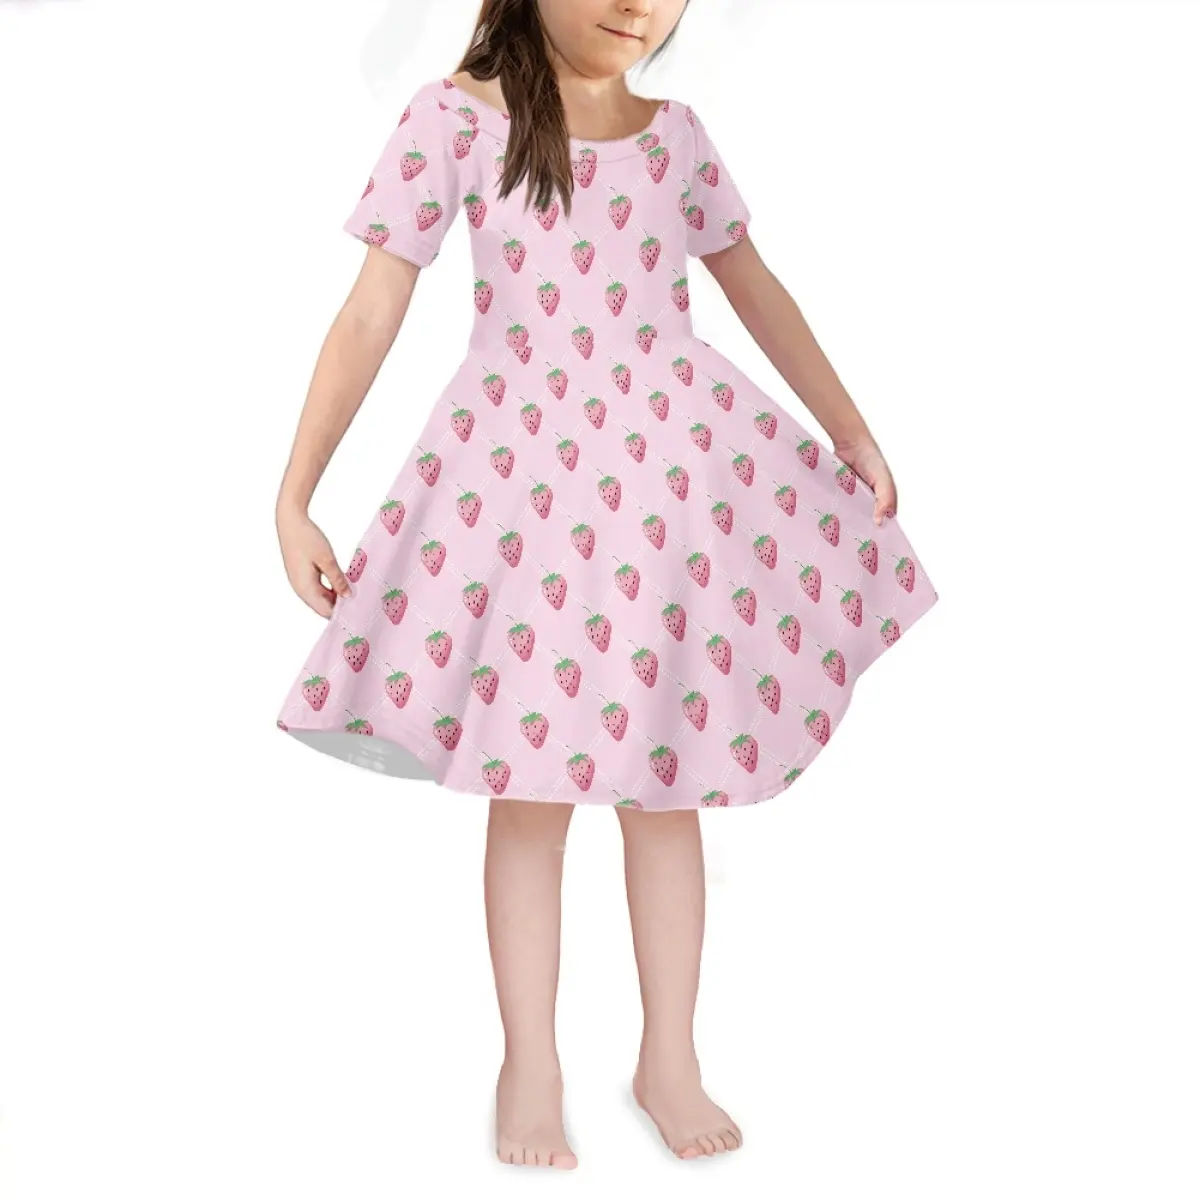 מותאם אישית חמוד קריקטורה תות ילדה שמלות עיצובים ילדה שמלת הדפסת על ביקוש ילדי ילדי שמלות עבור בנות של 10-11 yrs